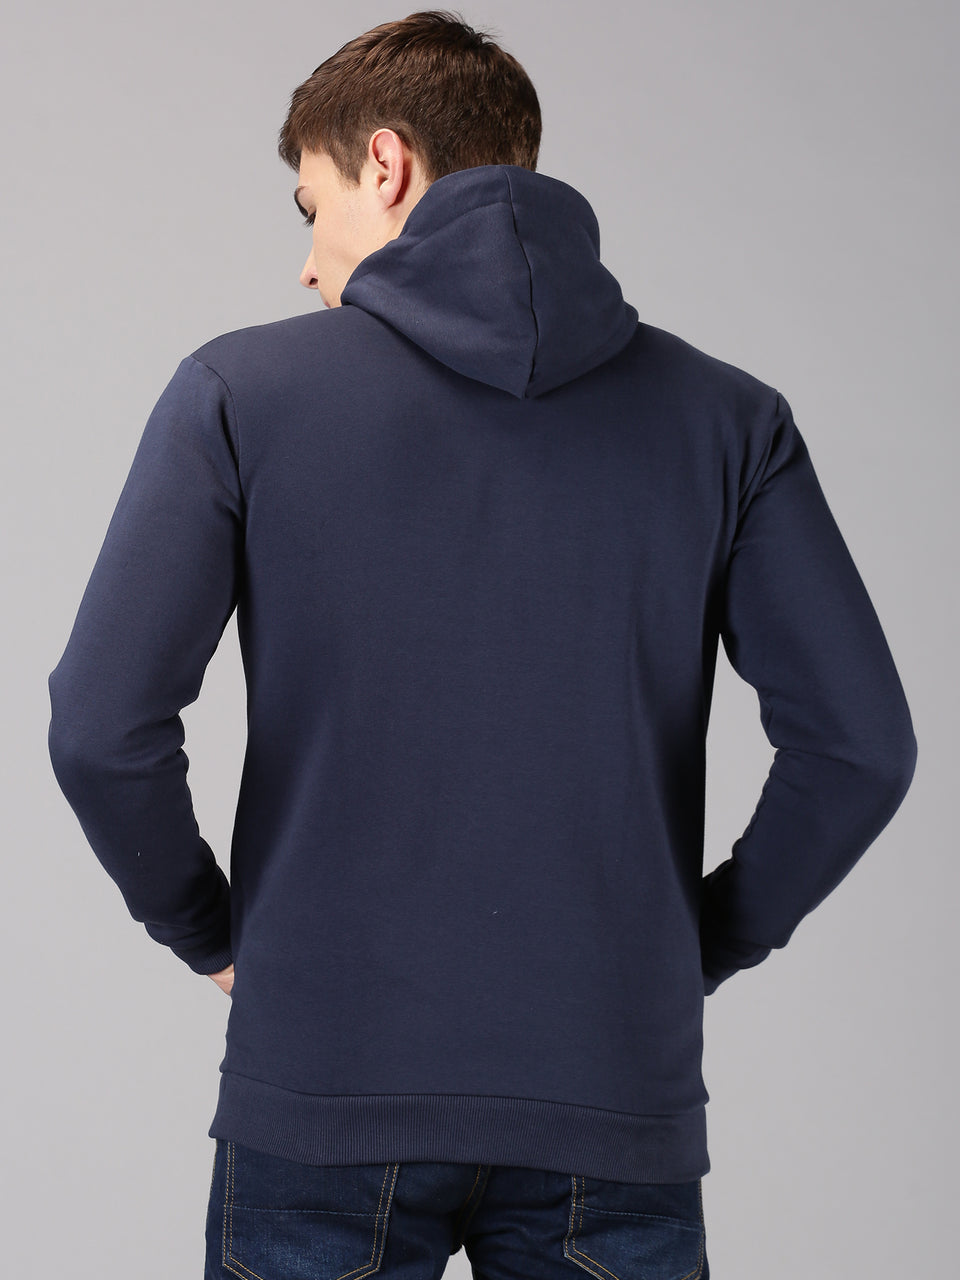 Men navy blue zip hooded sweatshirt